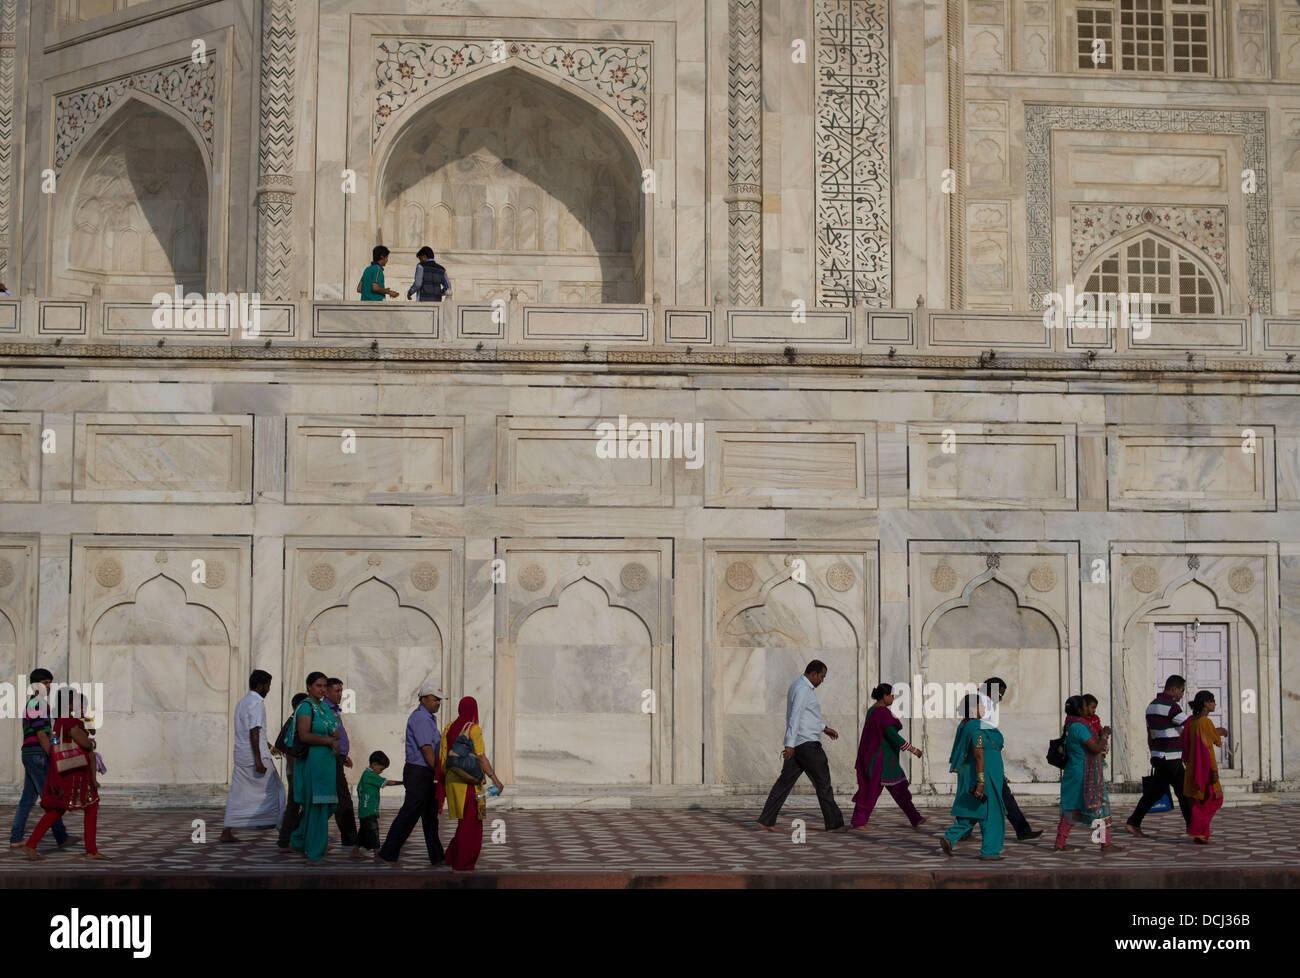 Touristen, die zum UNESCO-Weltkulturerbe Taj Mahal weißen Marmor-Mausoleum - Agra, Indien Stockfoto